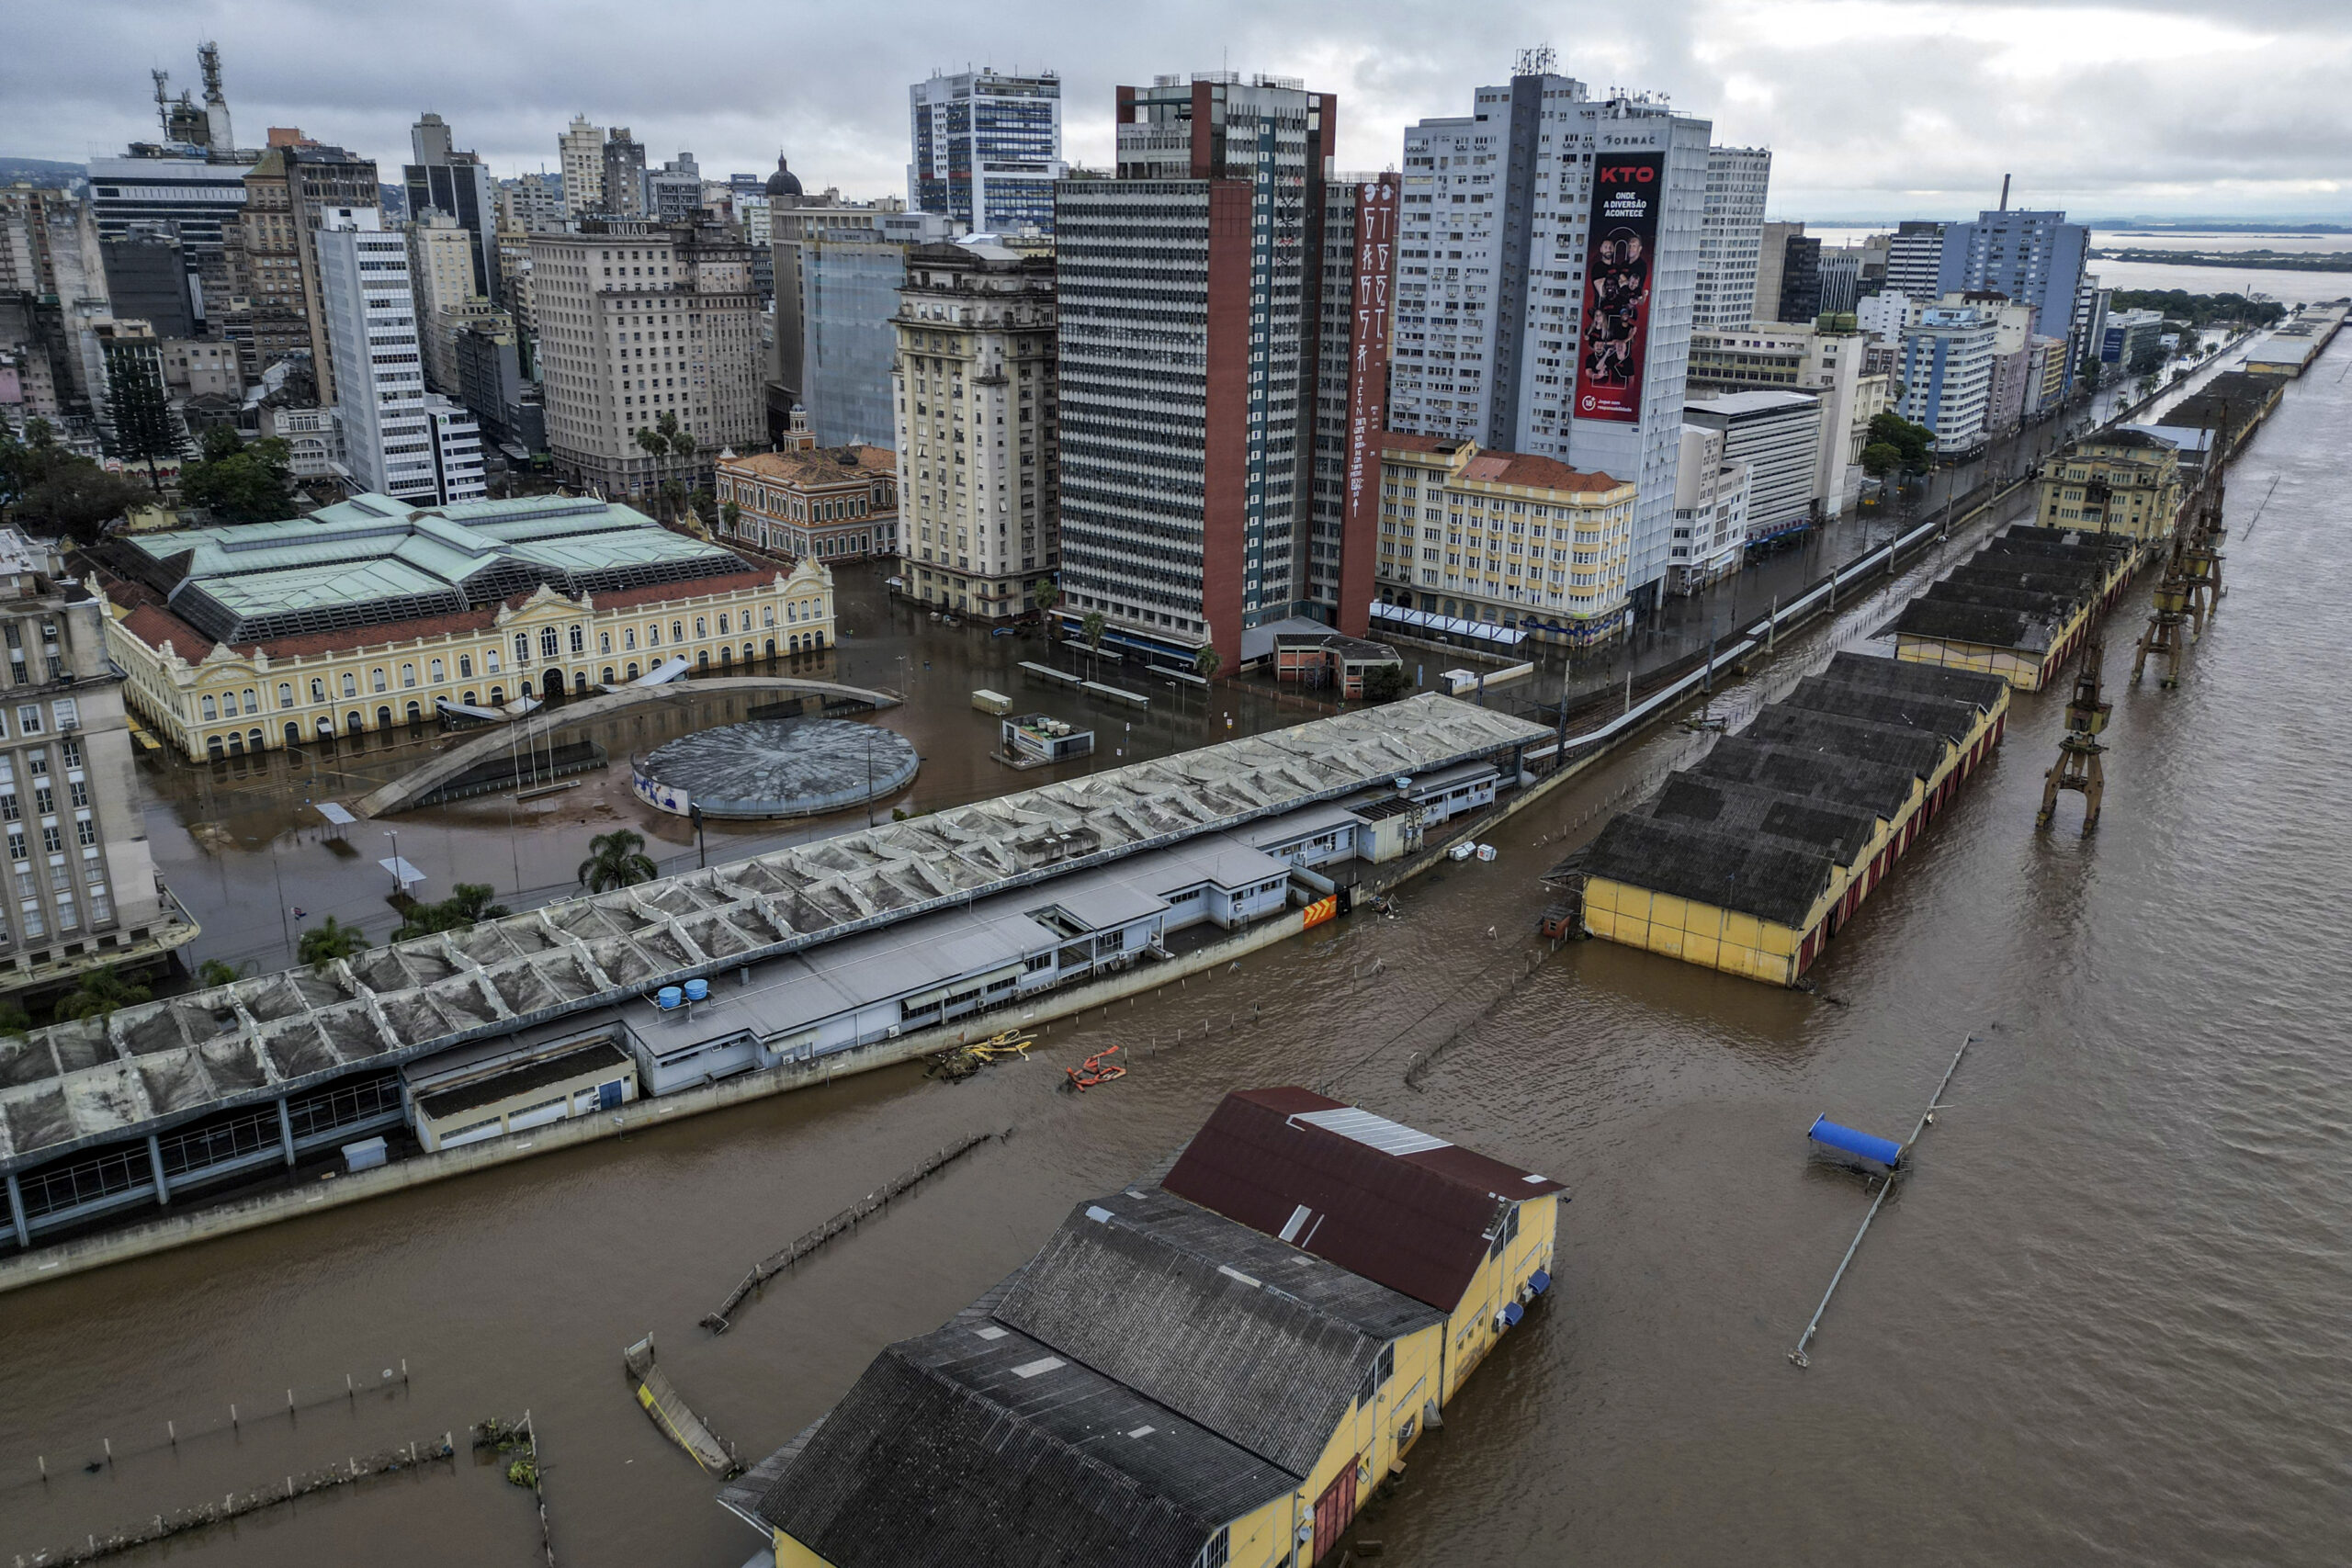 O futuro de milhares de pessoas é incerto após as inundações mortais no Brasil